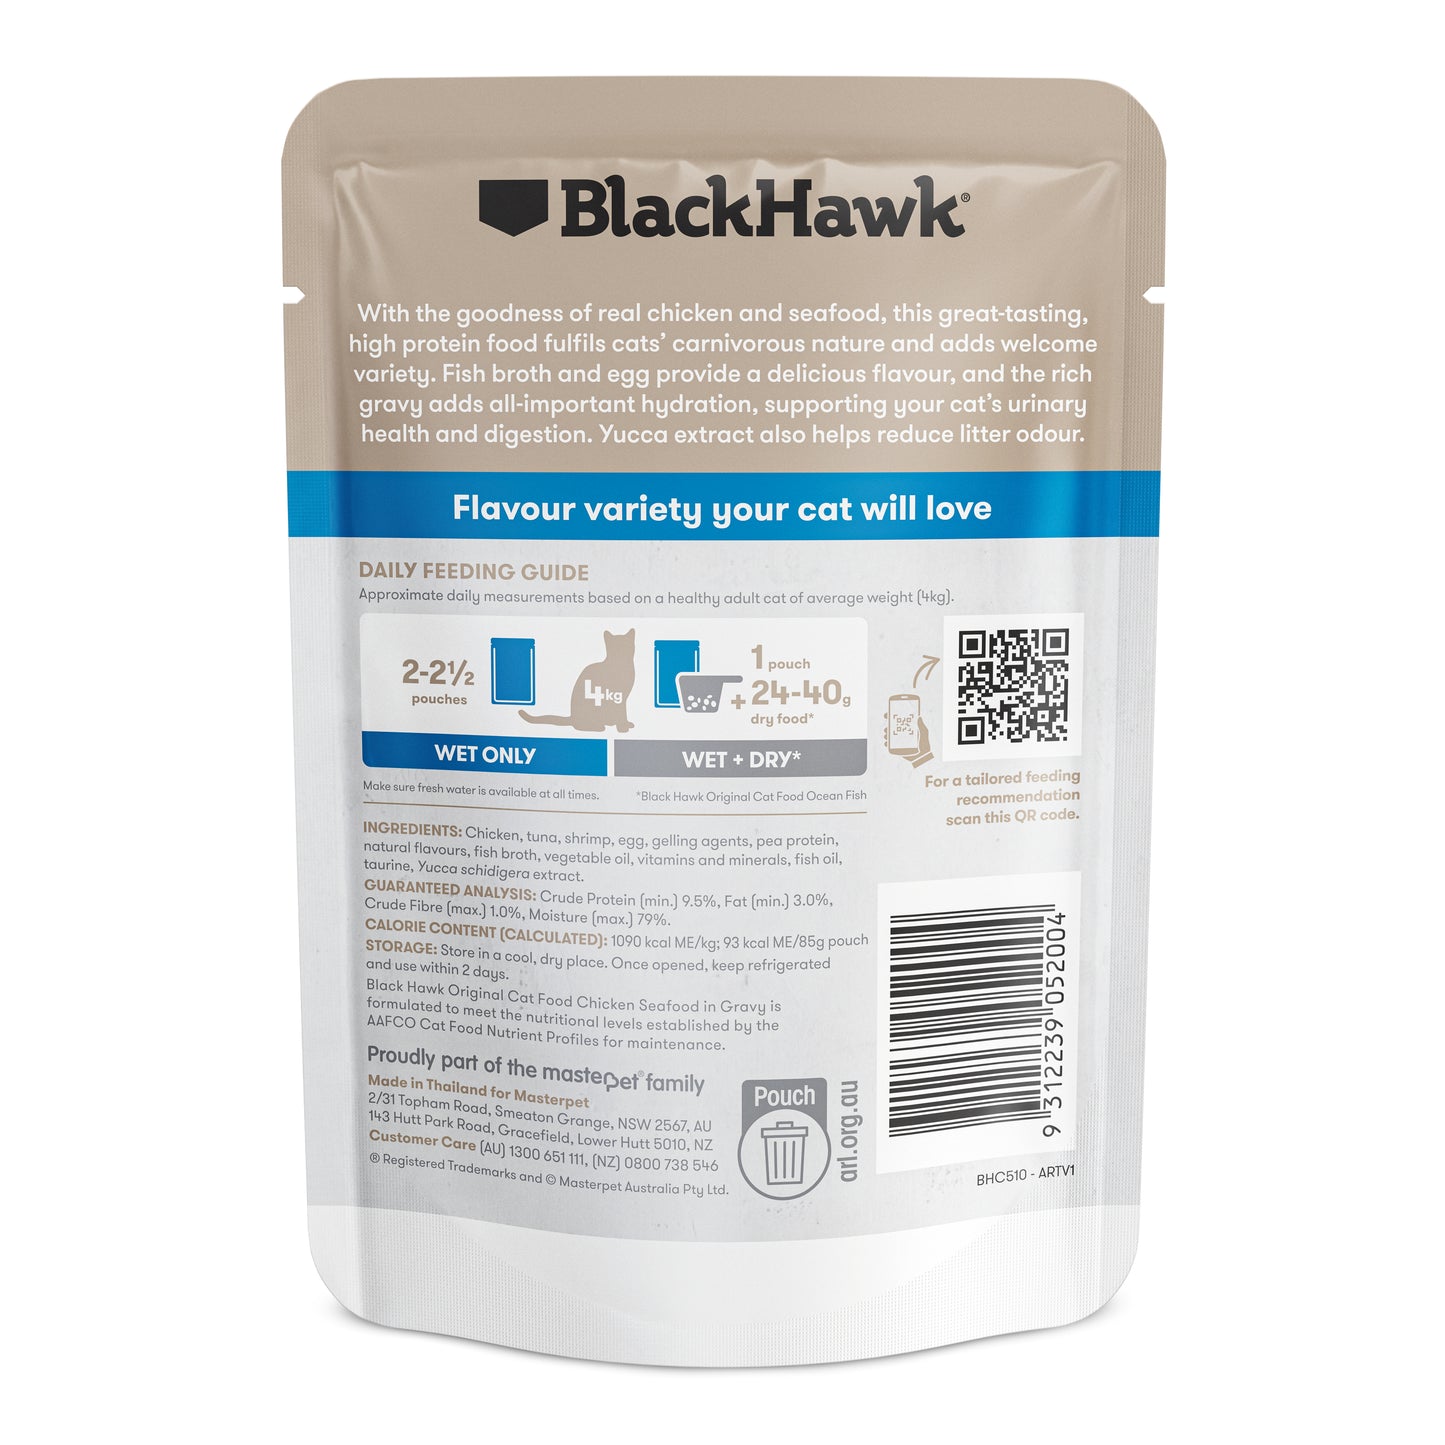 BlackHawk (NEW): Cat Original Chicken, Seafood, Gravy Pouch